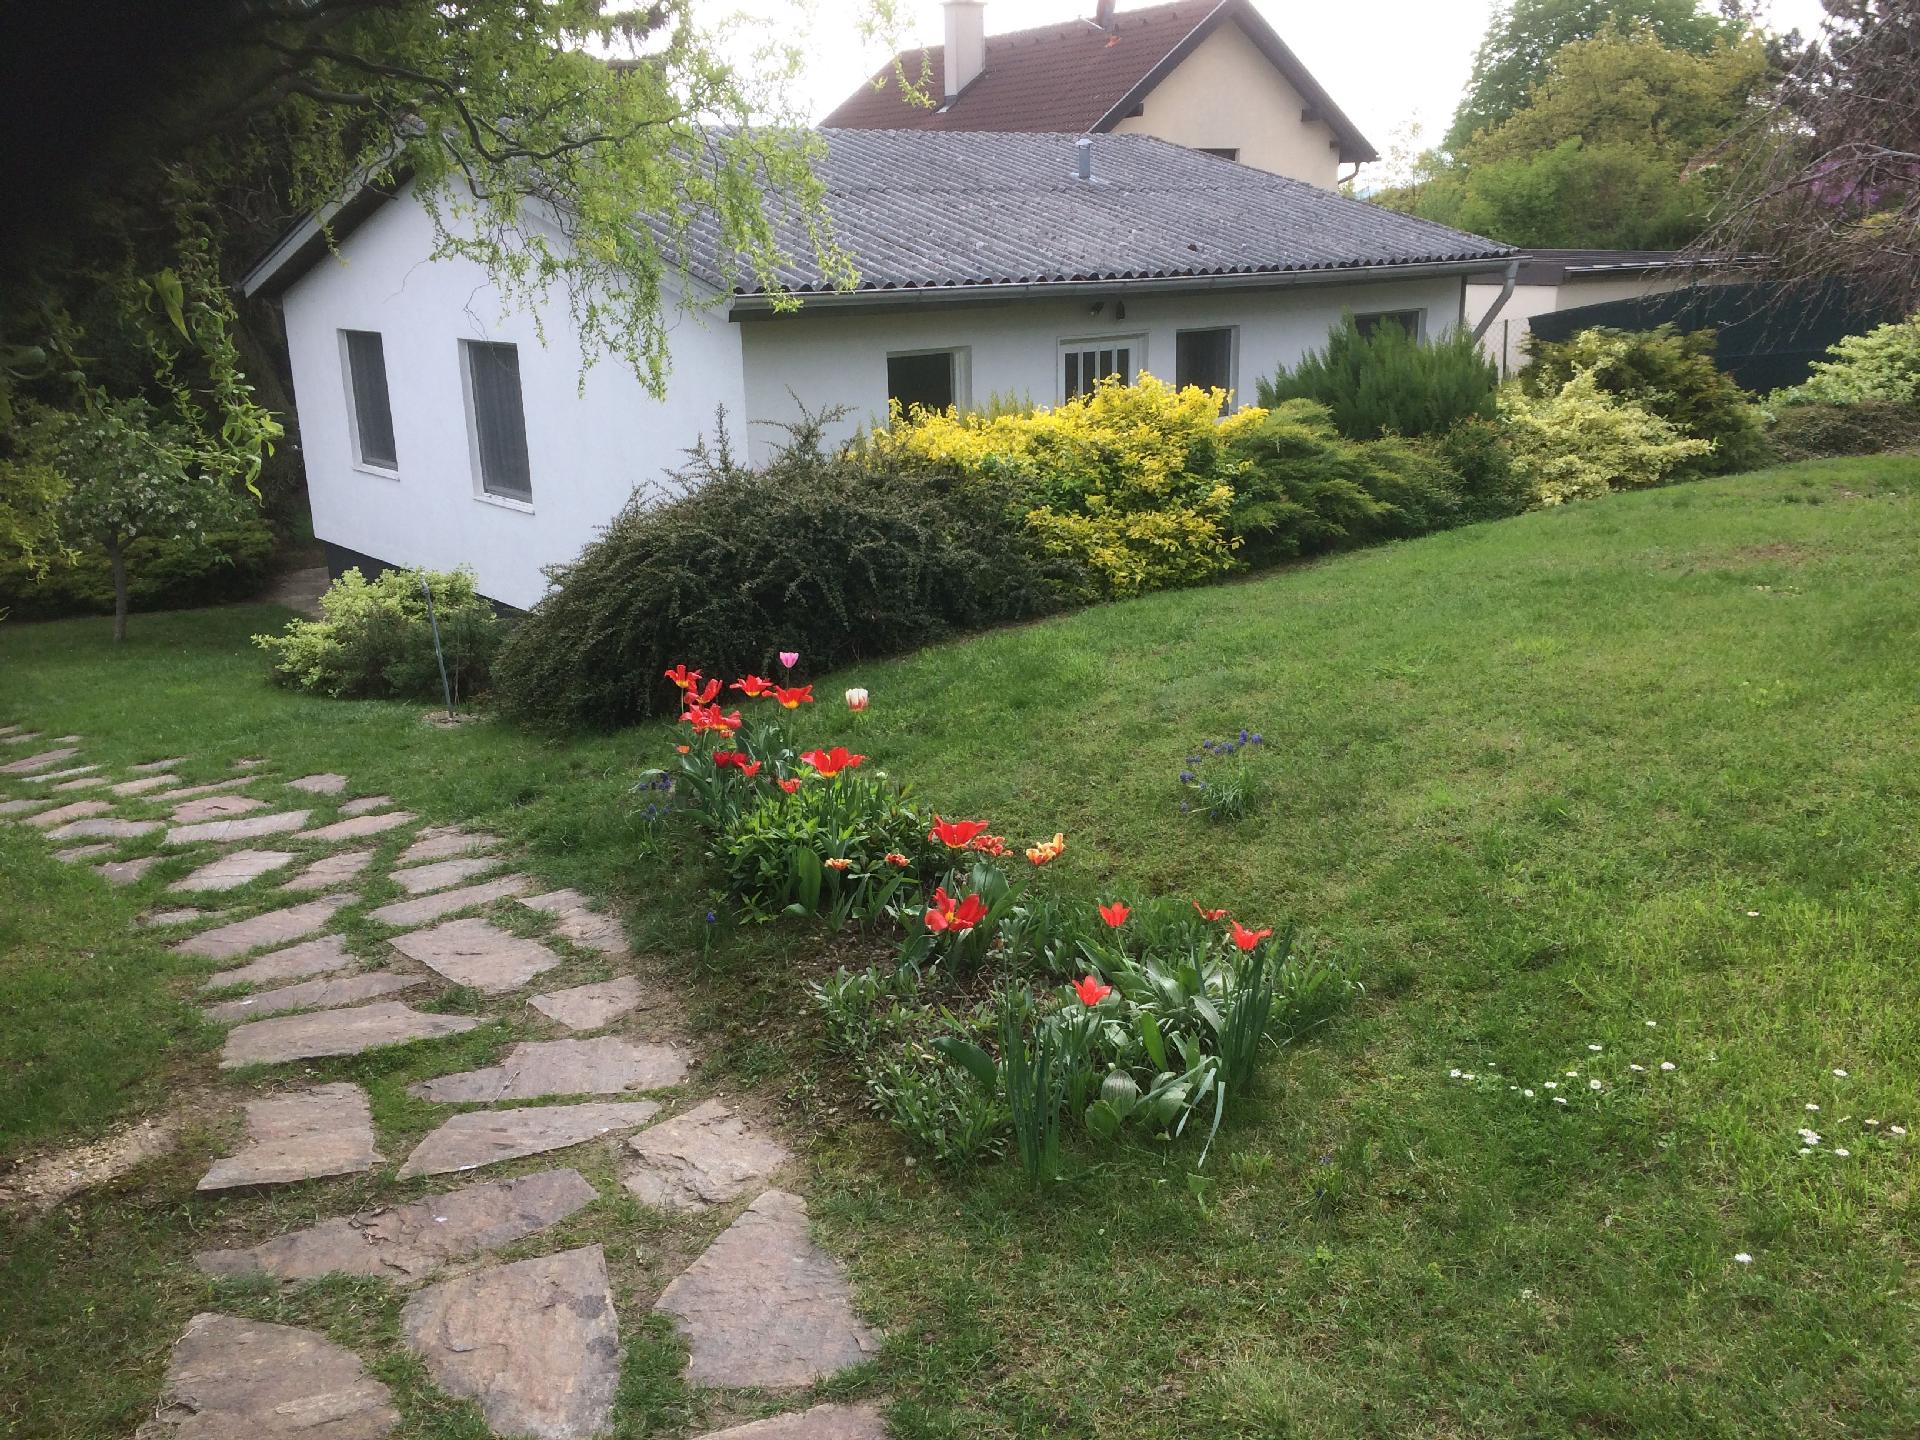  Ferienhaus in naturreicher Umgebung für erho   Niederösterreich